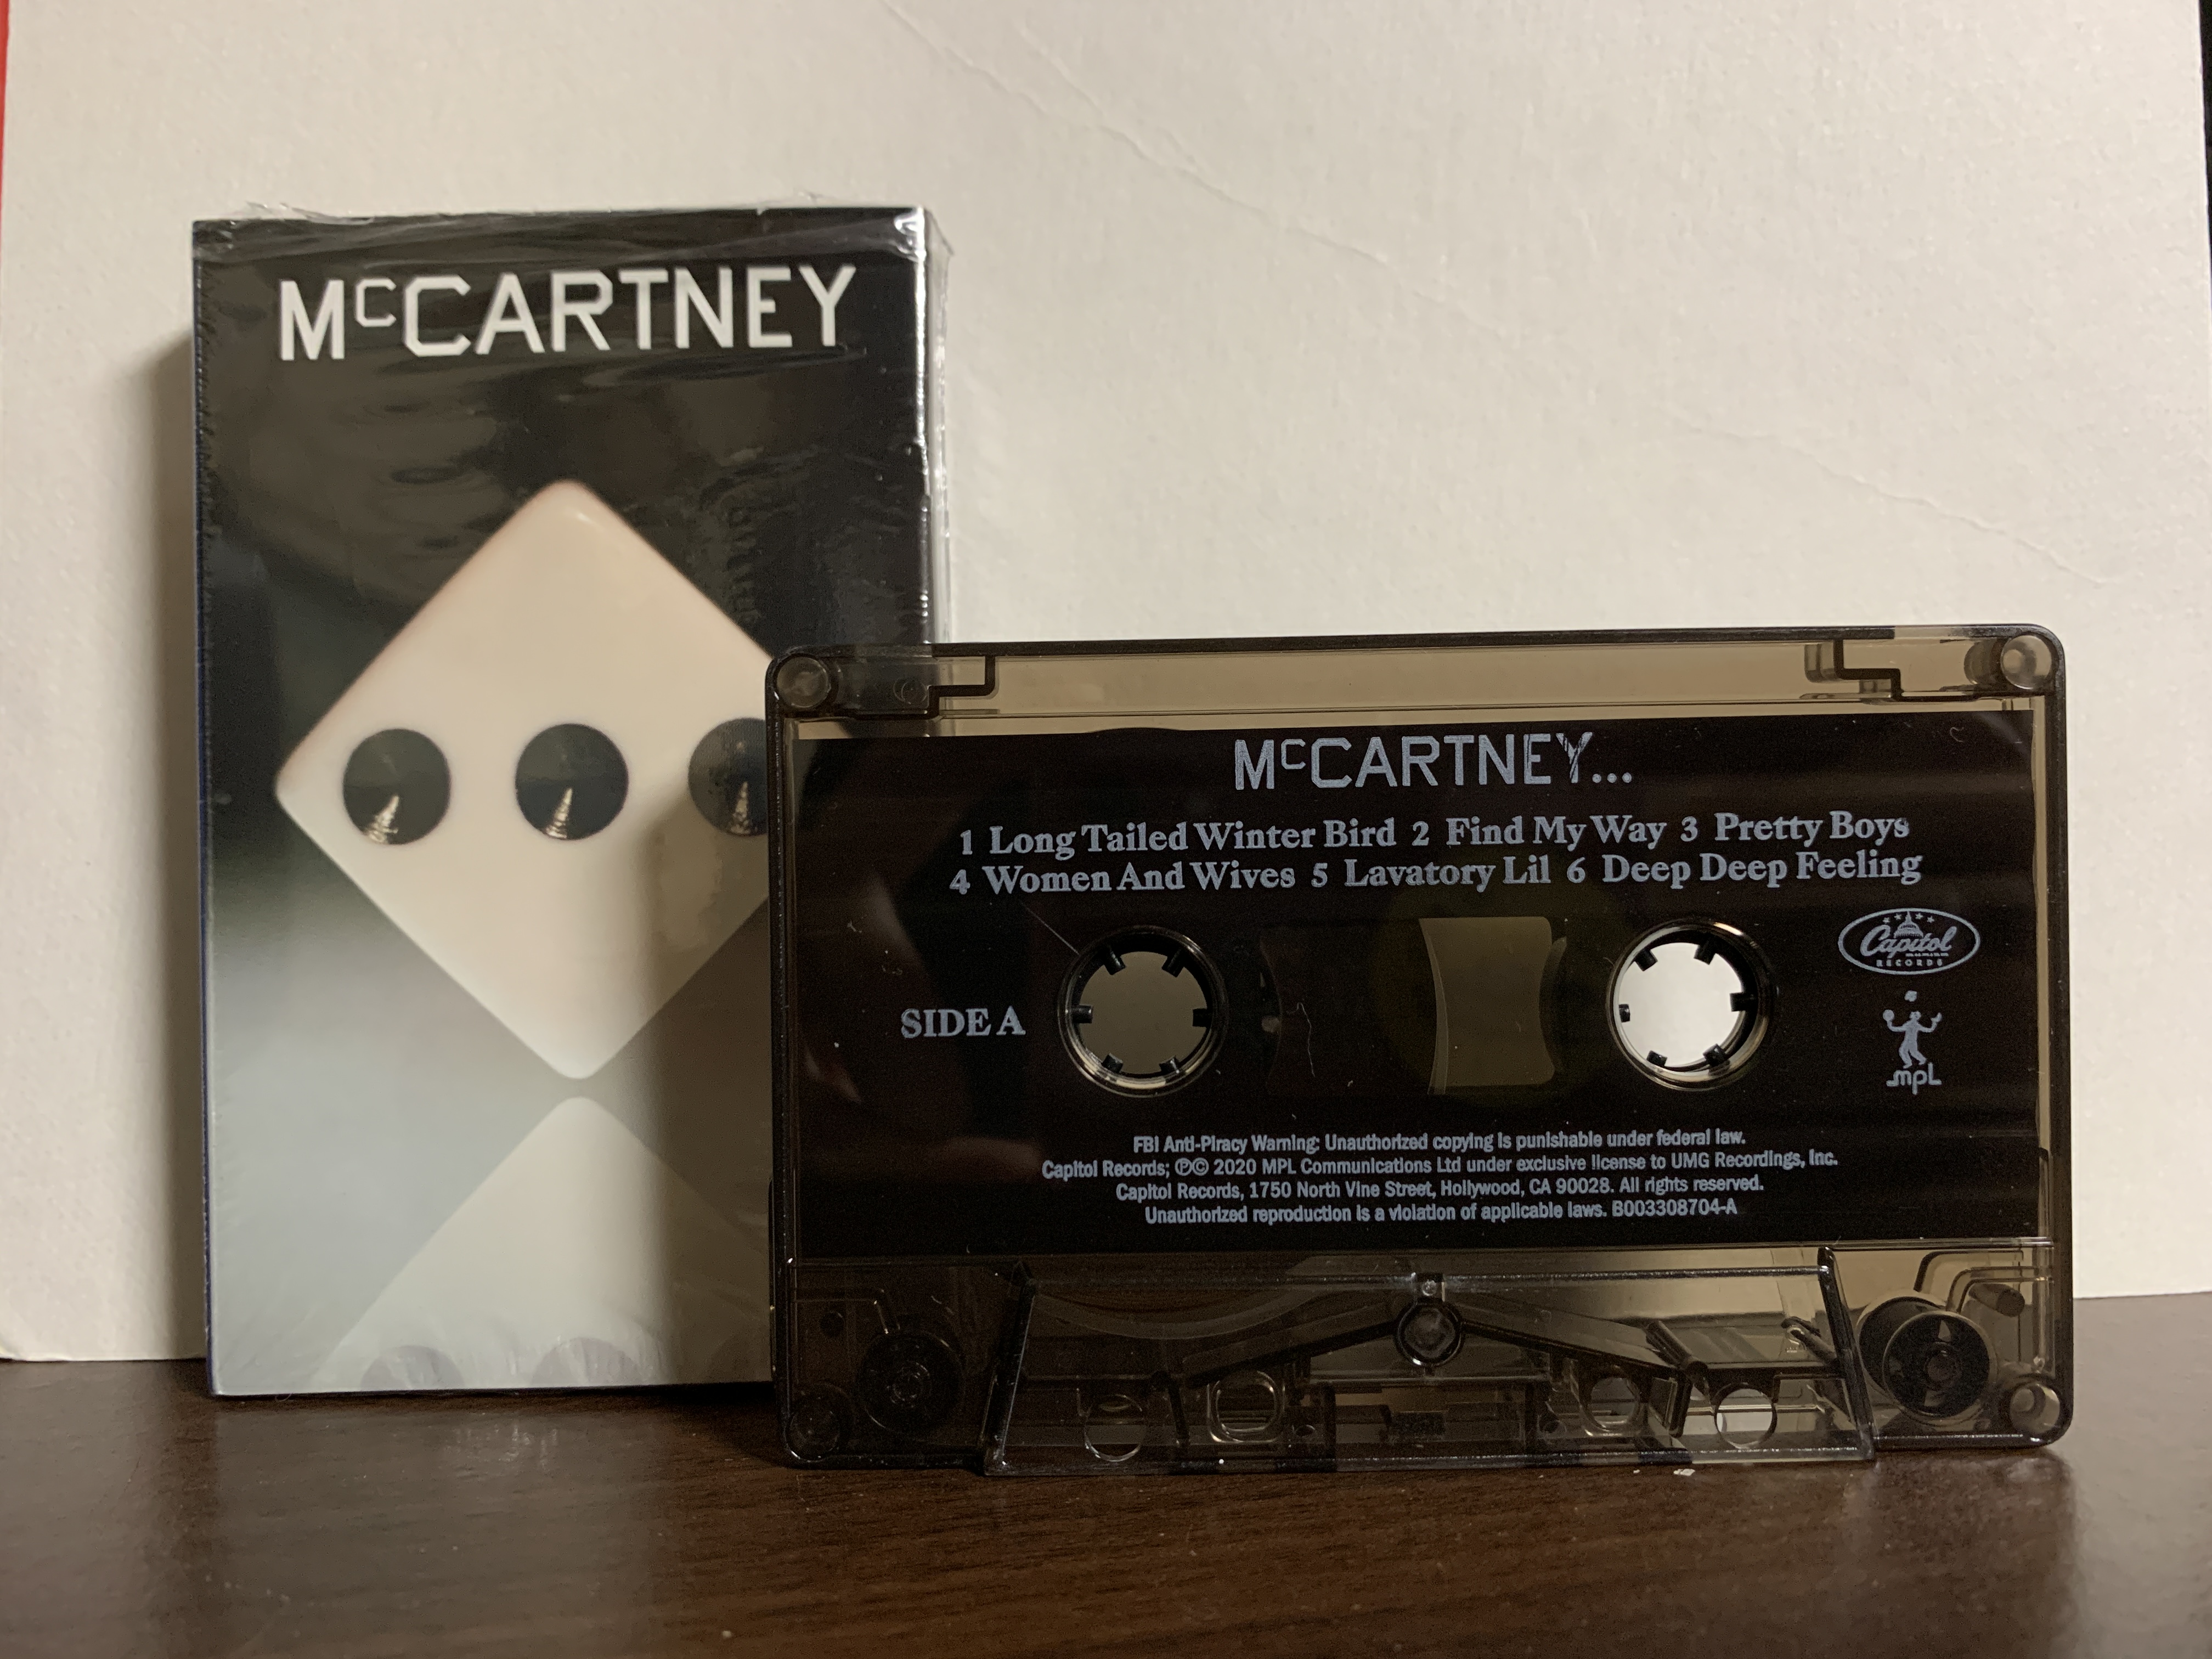 ポールマッカートニー 「McCartneyⅢ」輸入カセットテープについて